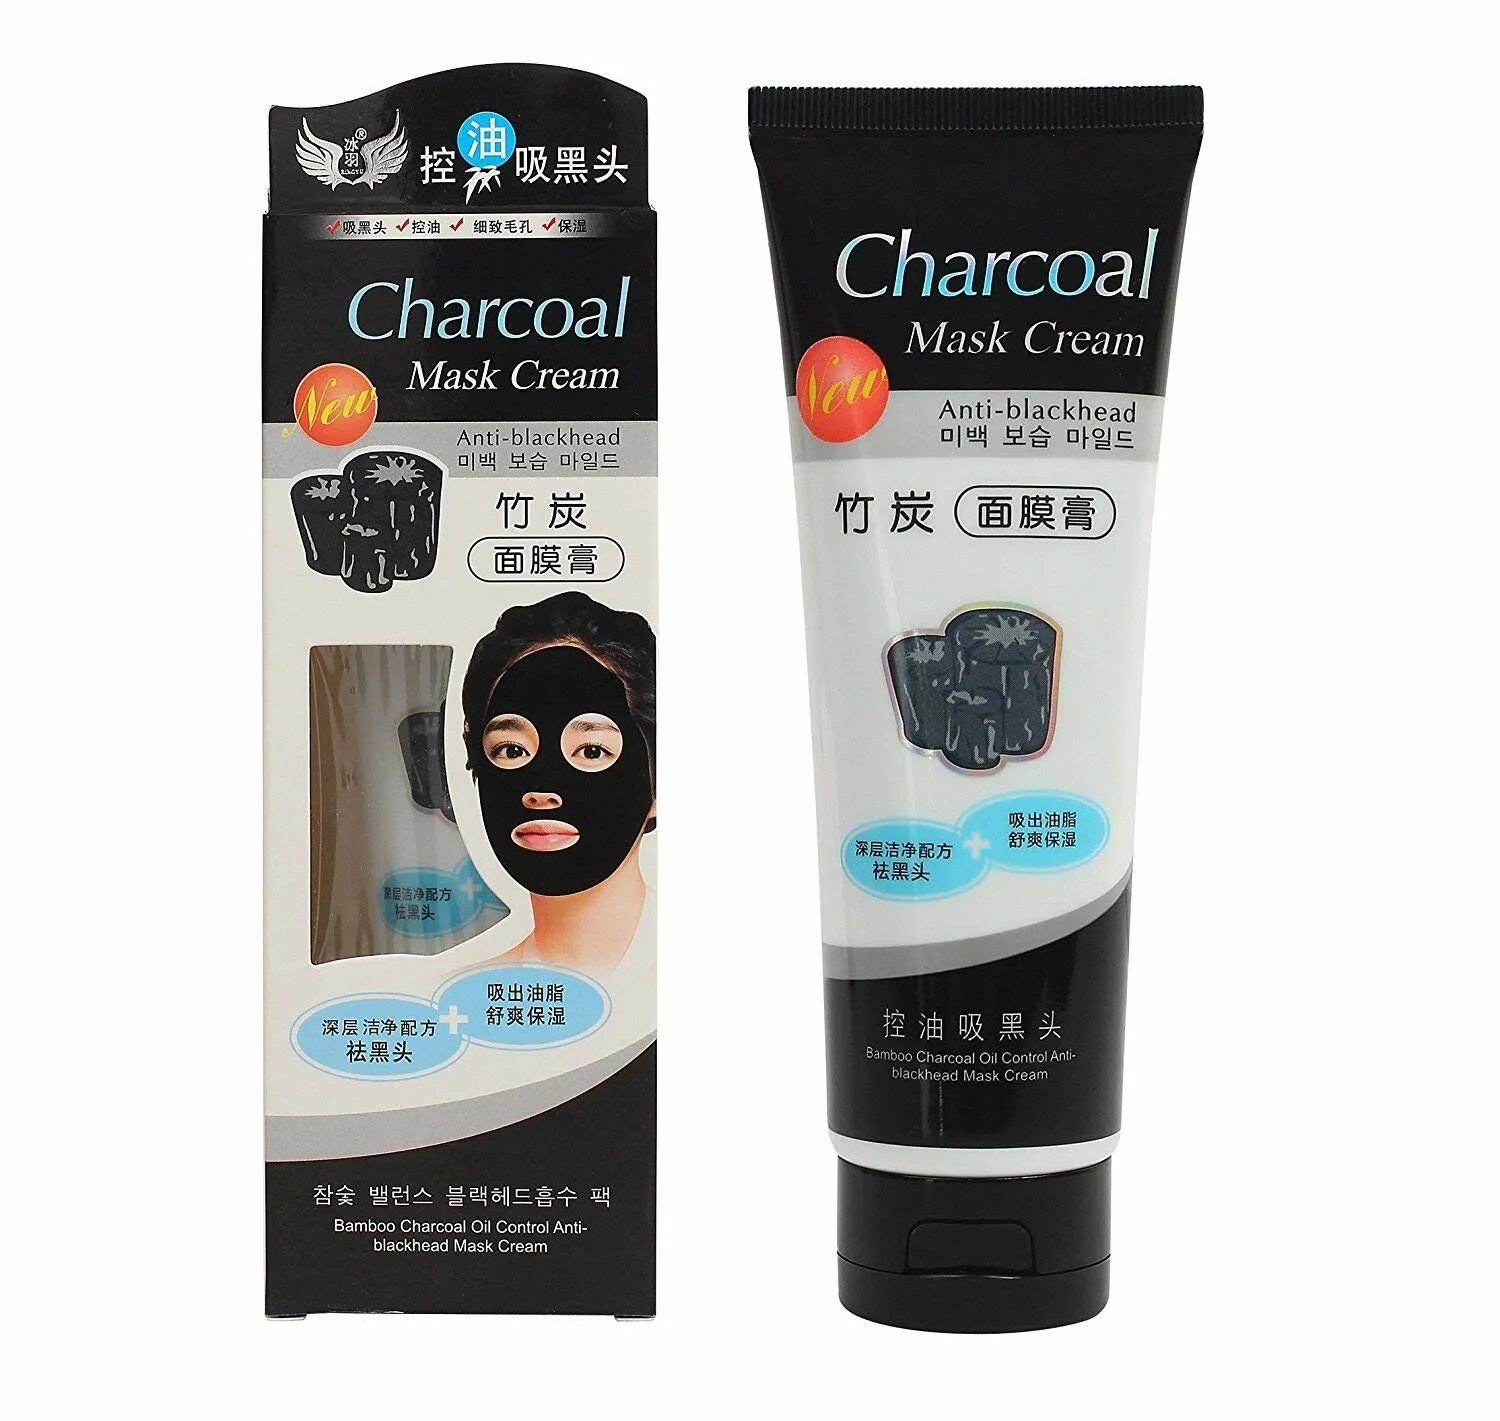 Blackheads маска. Крем маска Charcoal Mask Cream. Charcoal Mask Cream маска плёнка 130g. Charcoal Peel off Mask. Маска для лица  Charcoal маска крем бамбуковая с углем.